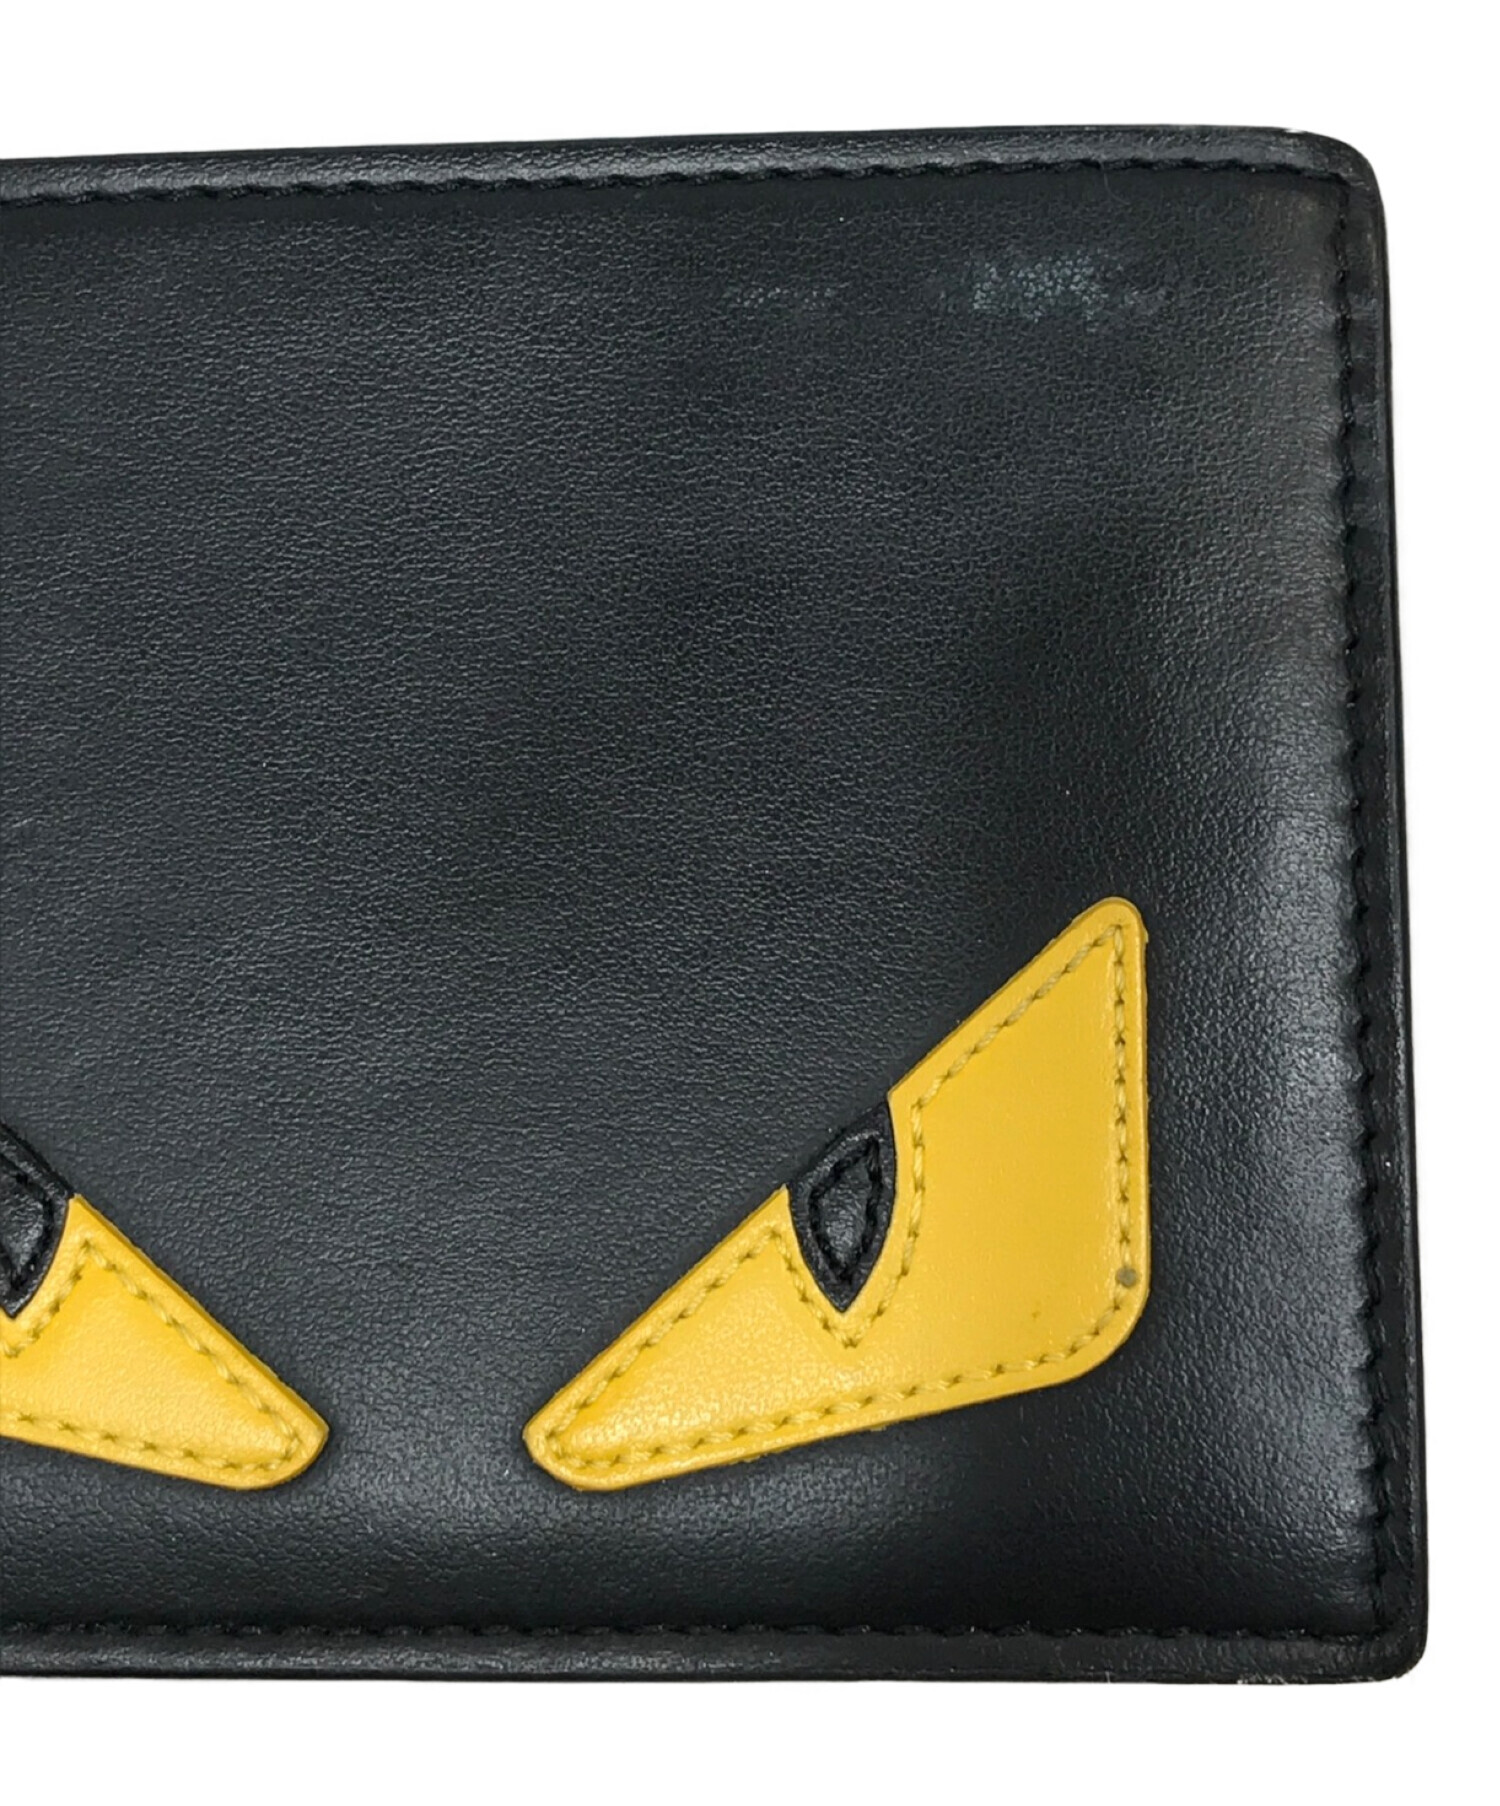 FENDI (フェンディ) 2つ折り財布 ブラック×イエロー サイズ:記載なし